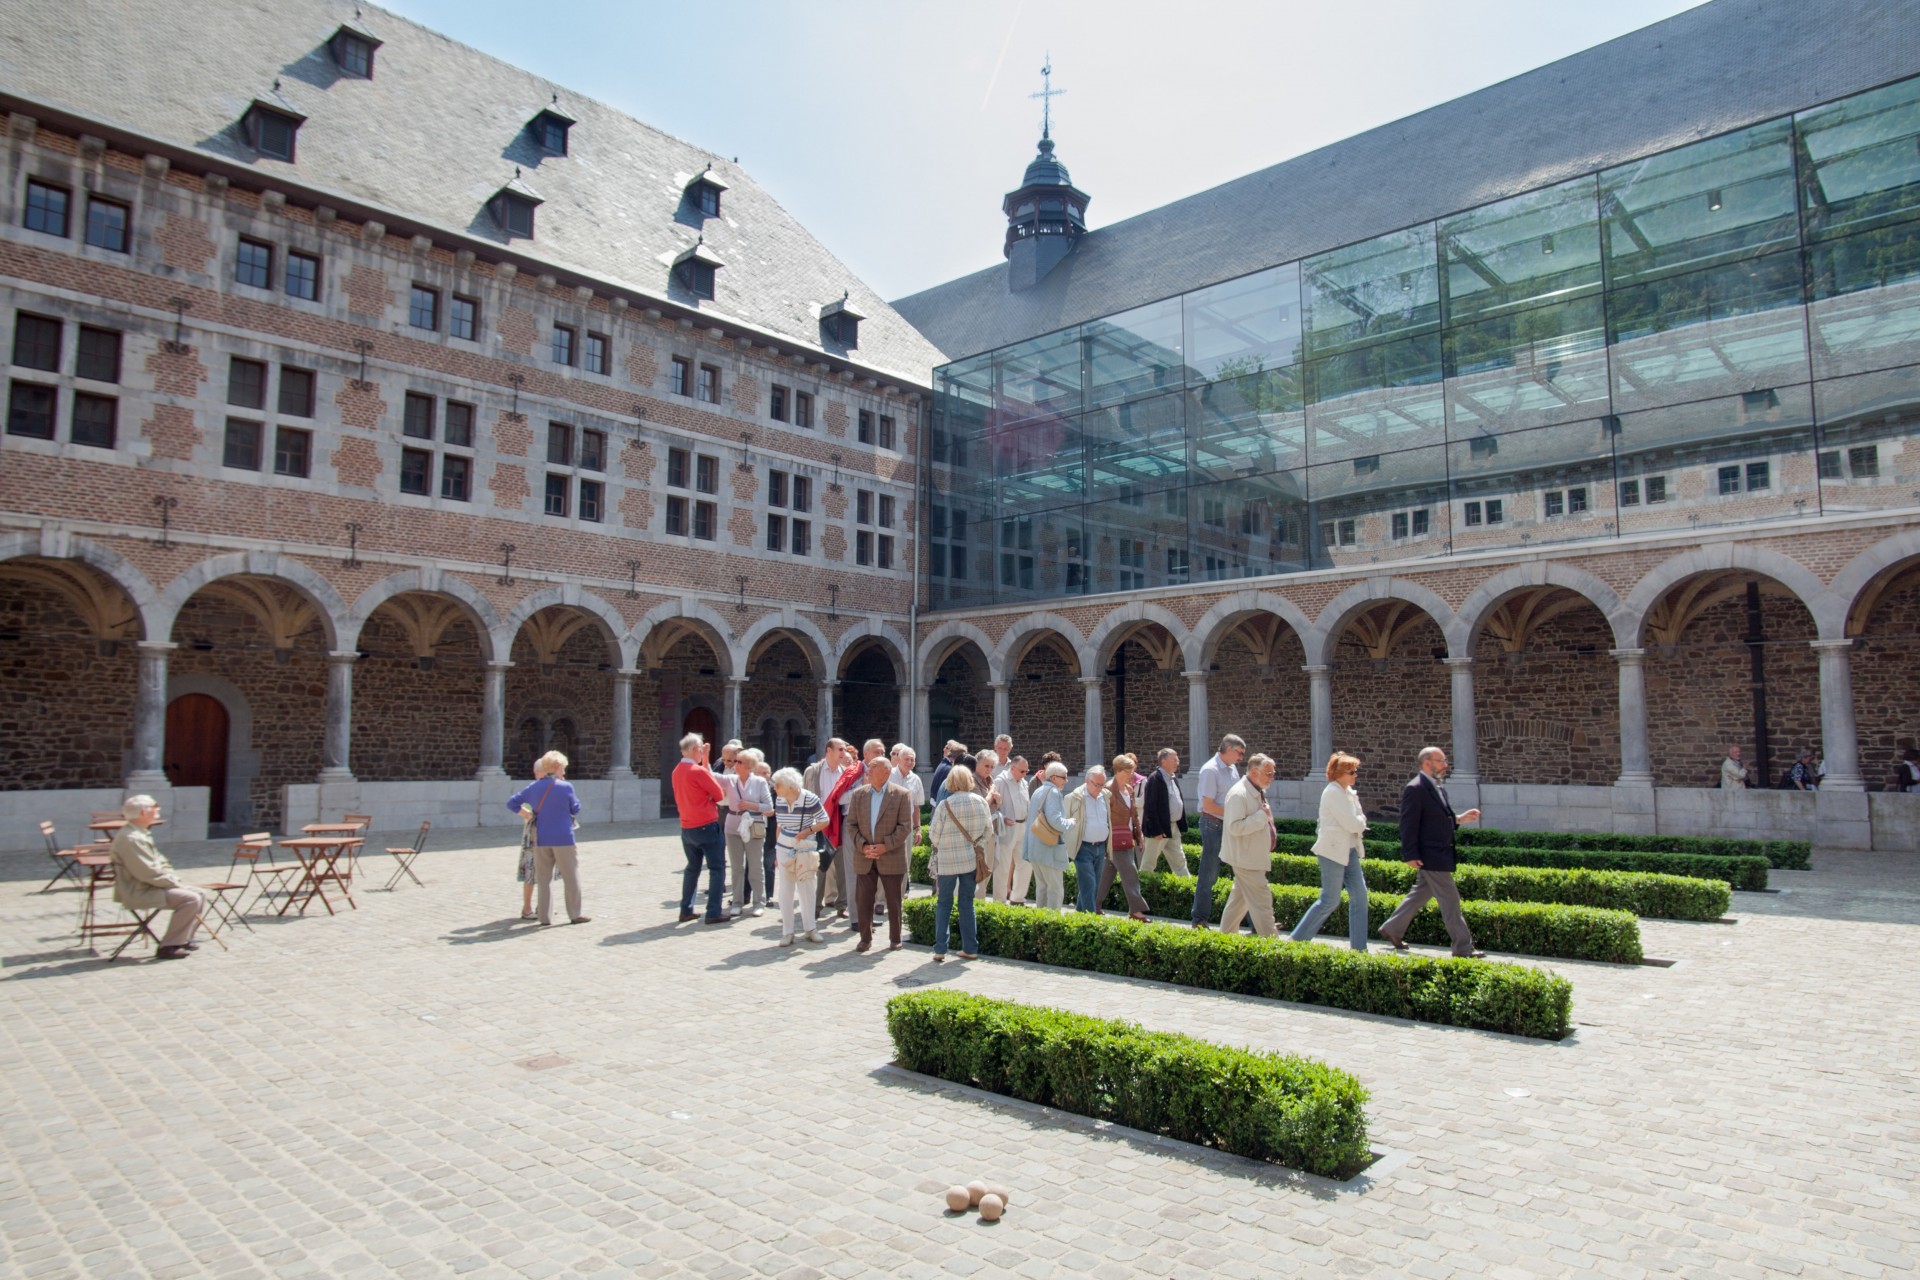 Musée de la Vie wallonne - Liège